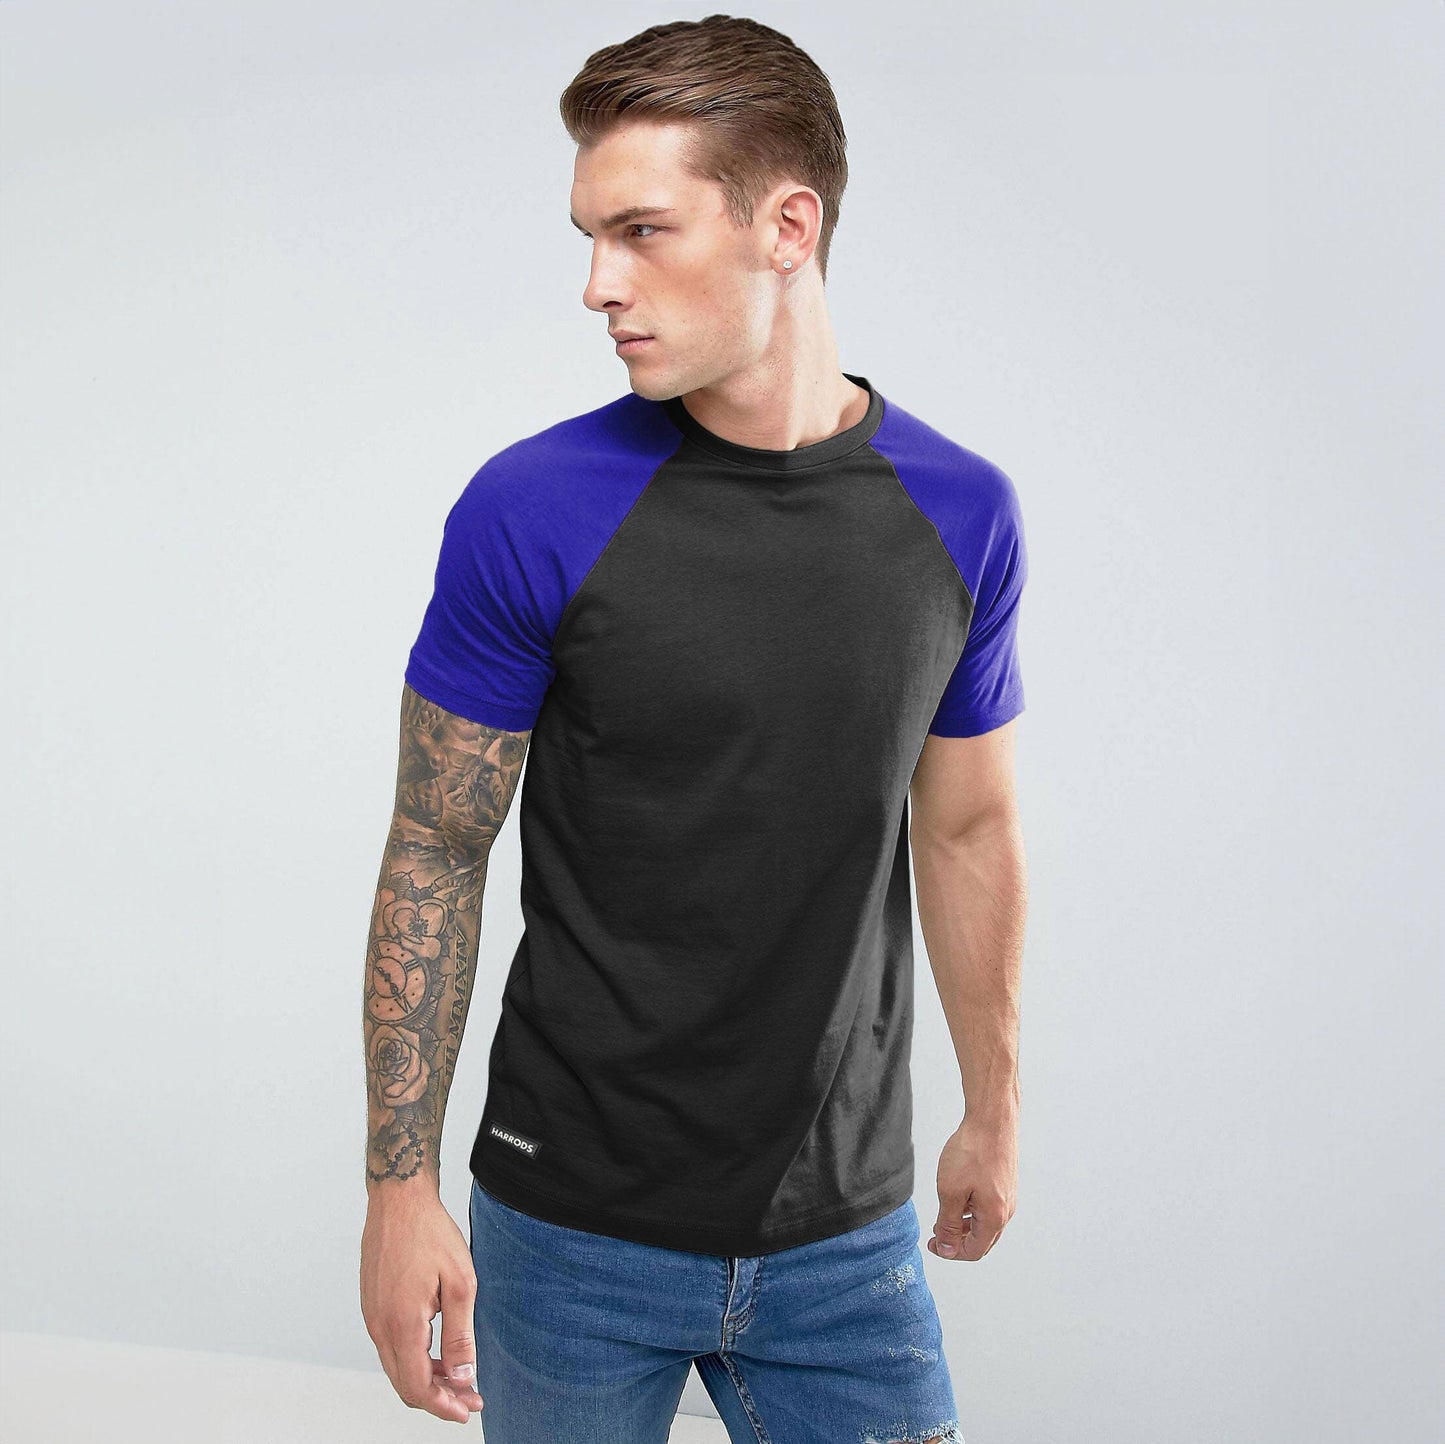 Harrods Men's Contrast Sleeve Style Minor Fault Crew Neck Tee Shirt